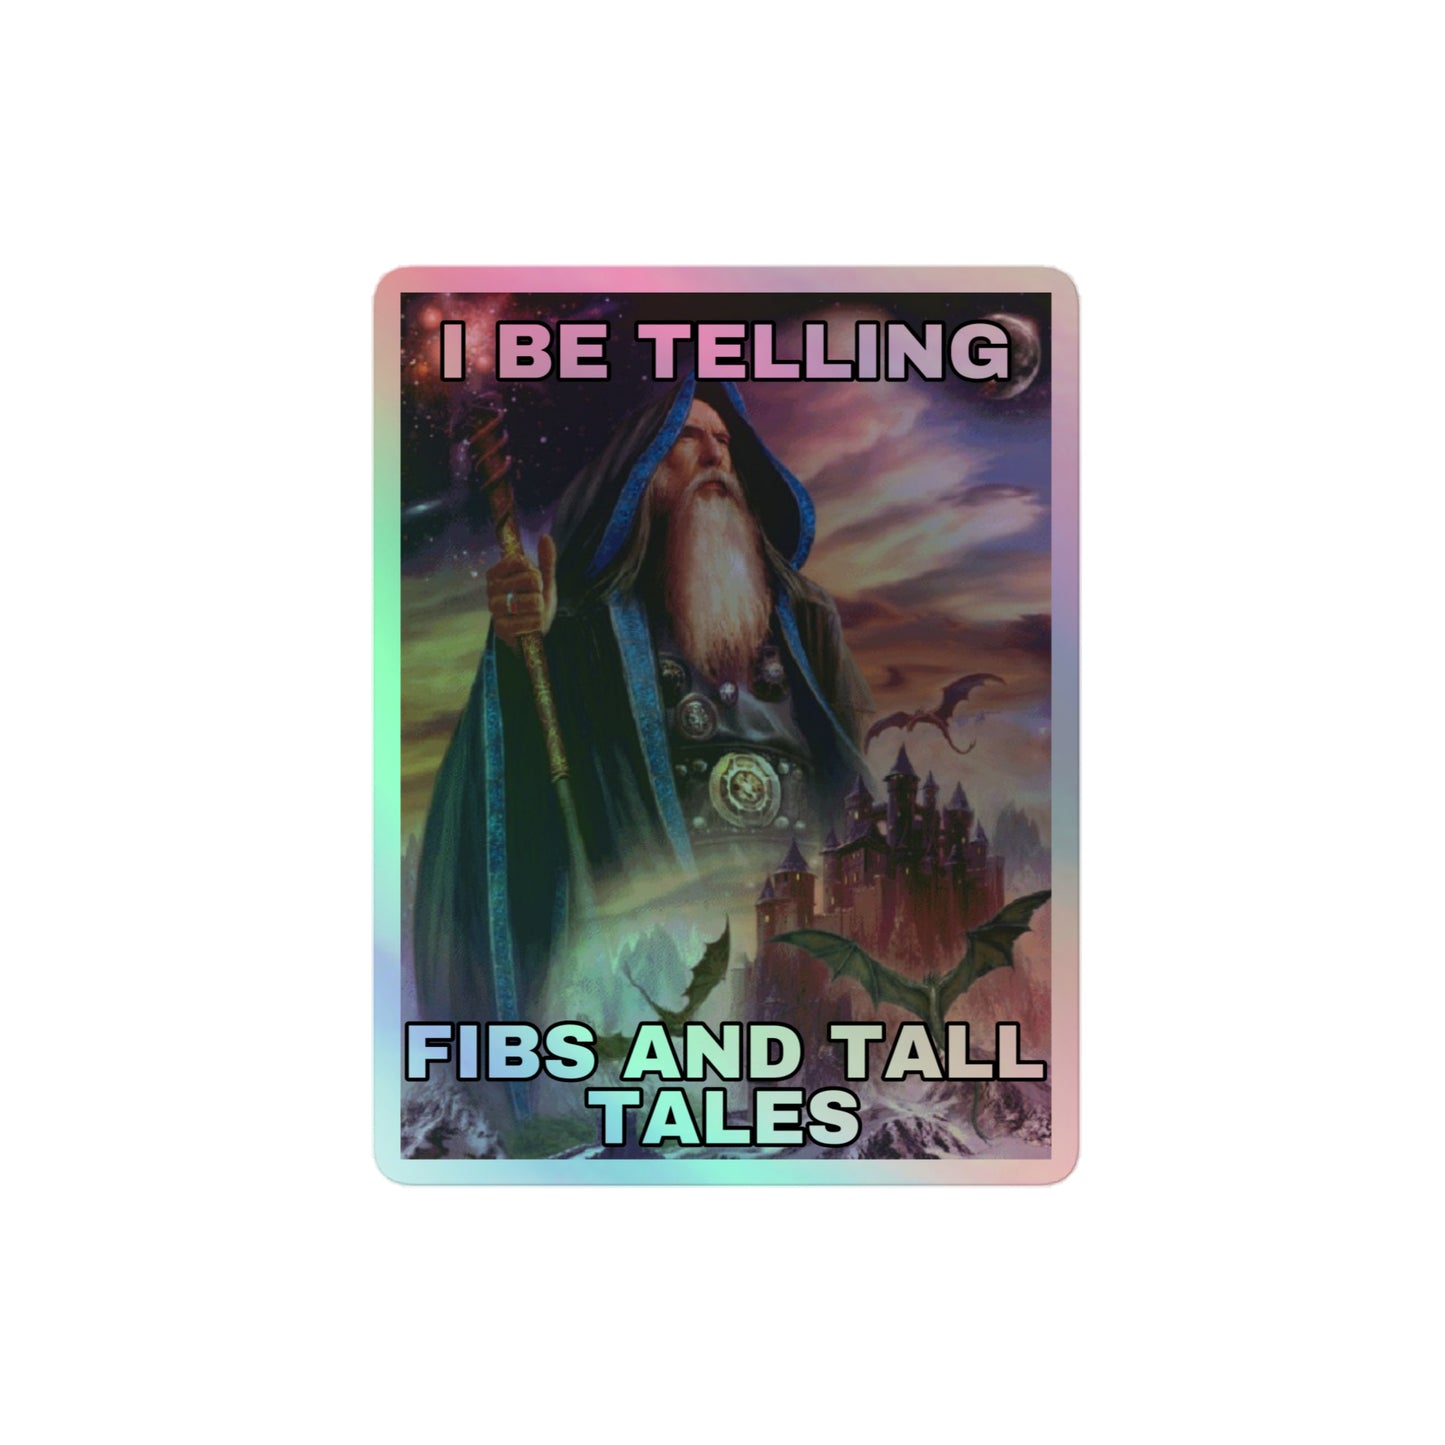 I be telling fibs and tall tales (sticker)